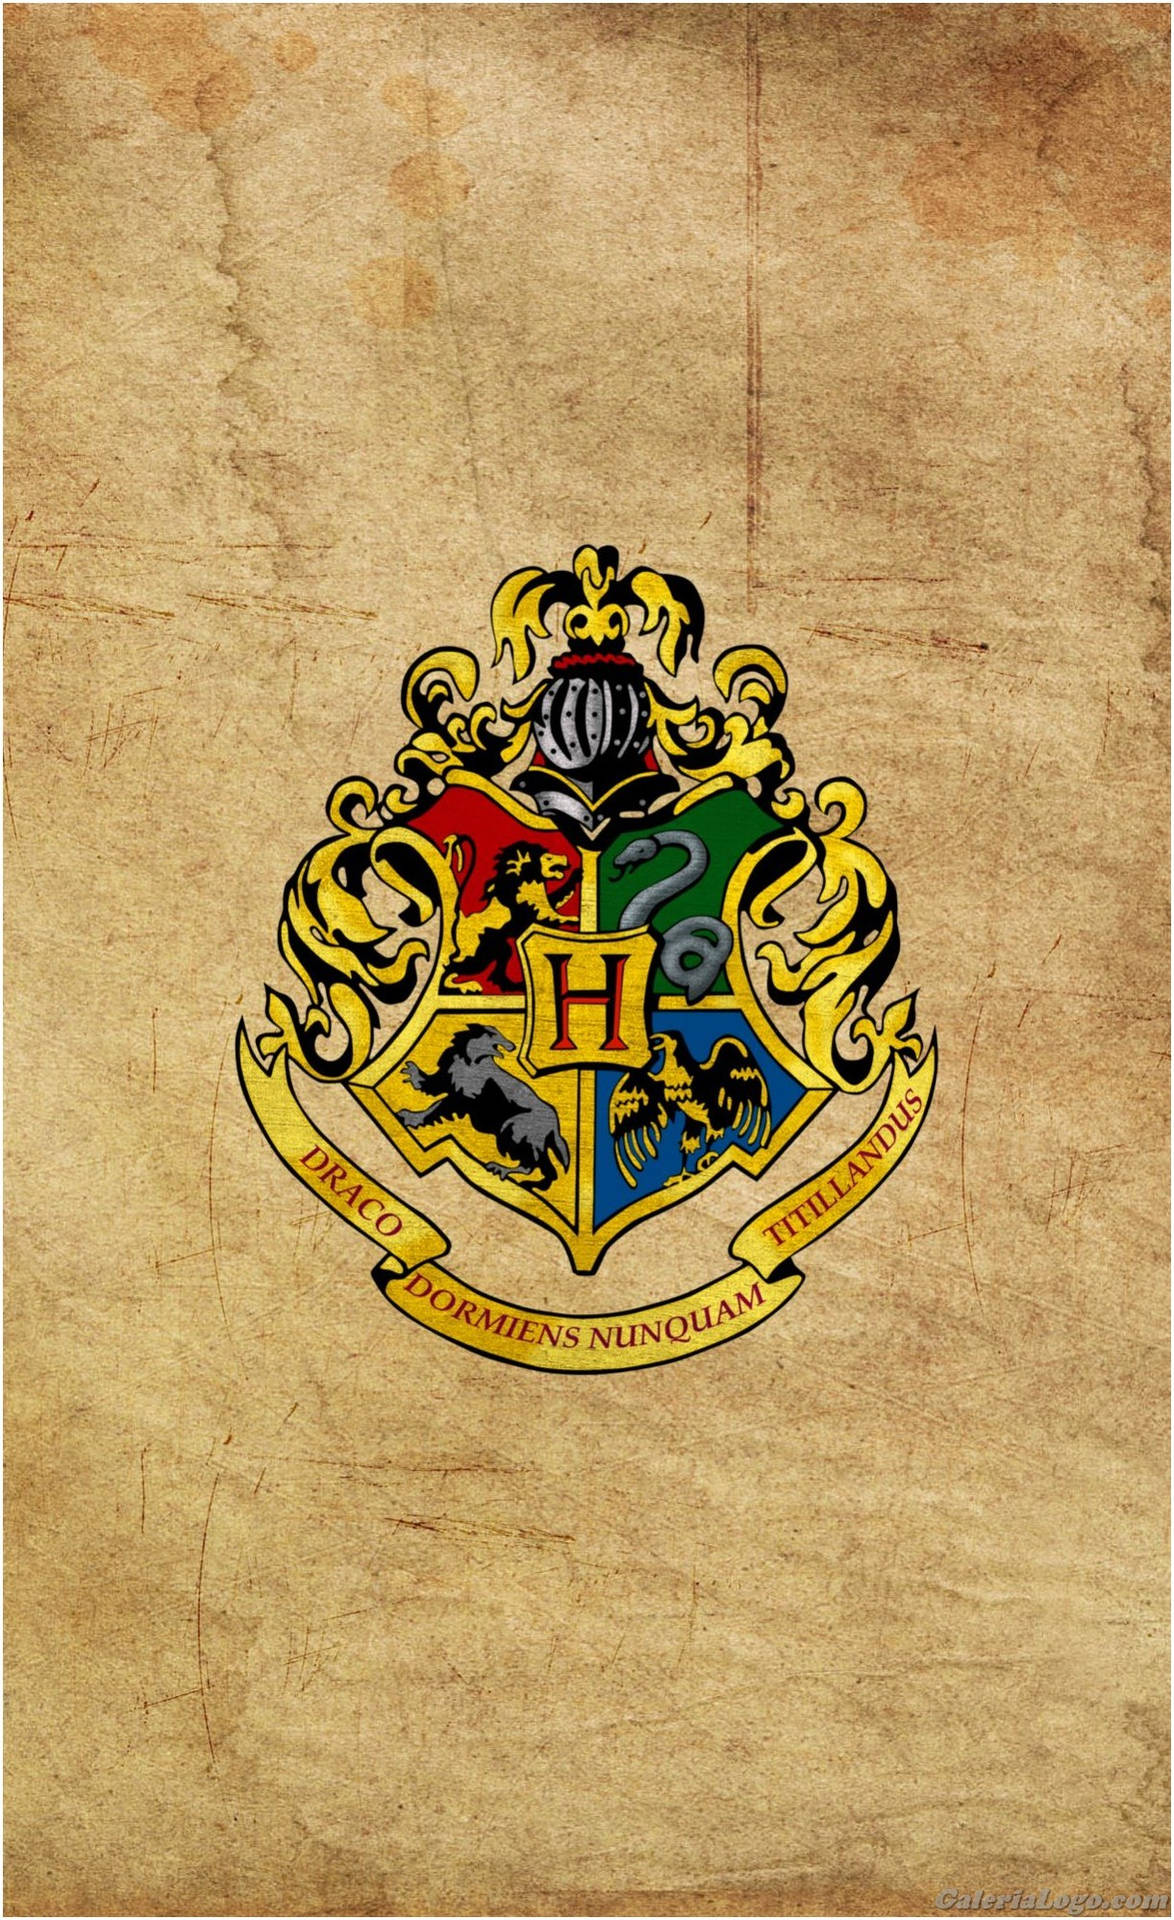 Tải xuống hình nền iPhone Harry Potter để trở thành một pháp sư thực sự trong thế giới của Hogwarts! Chúng tôi đang cung cấp một loạt các mẫu hình nền phù hợp với nhu cầu của bạn.